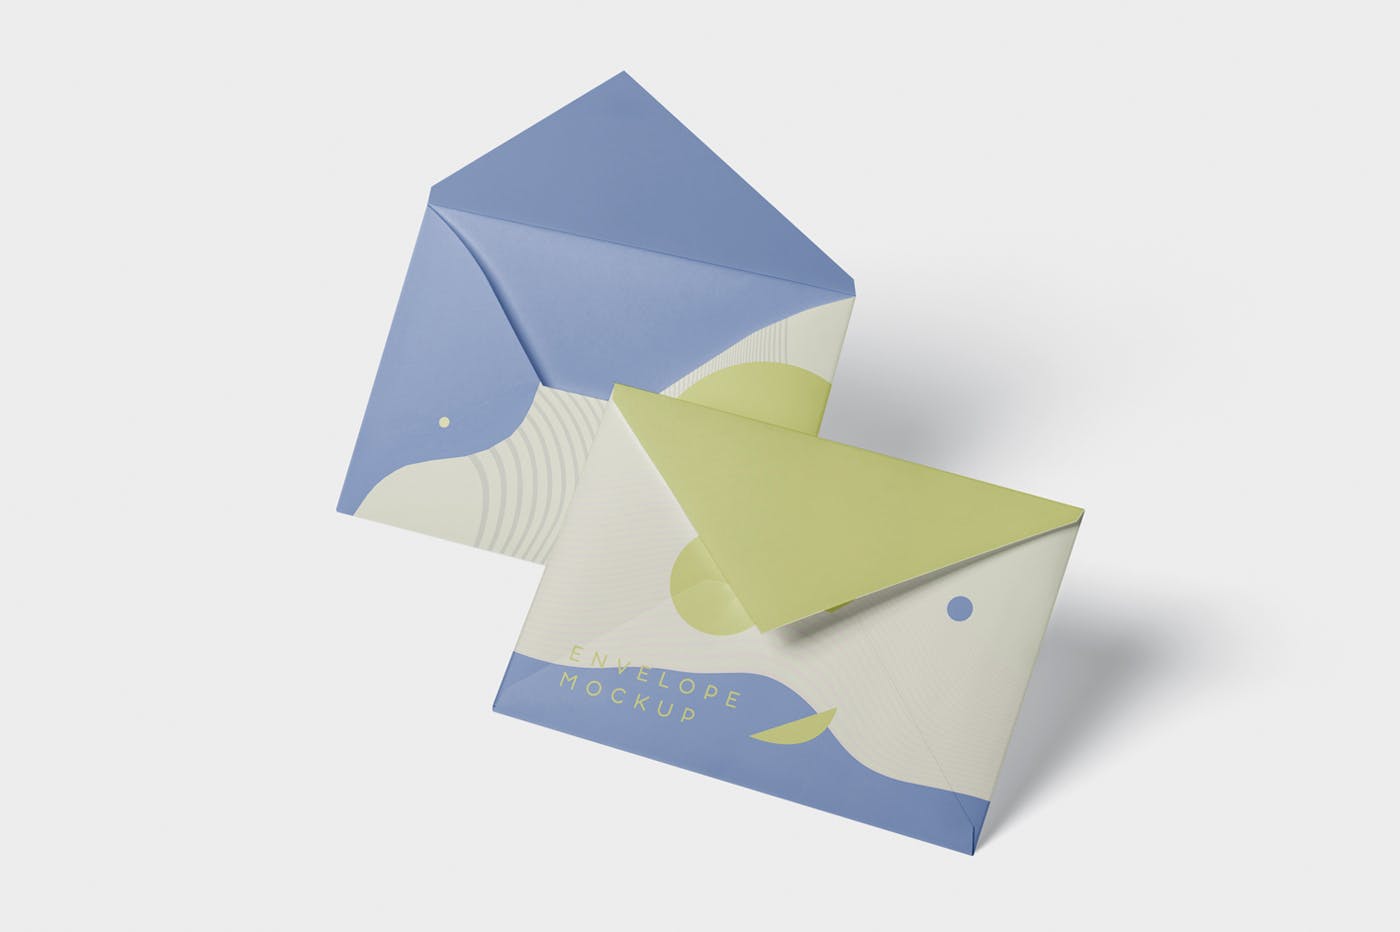 高端企业信封外观设计图素材库精选模板 Envelope C5 – C6 Mock-Up Set插图(3)